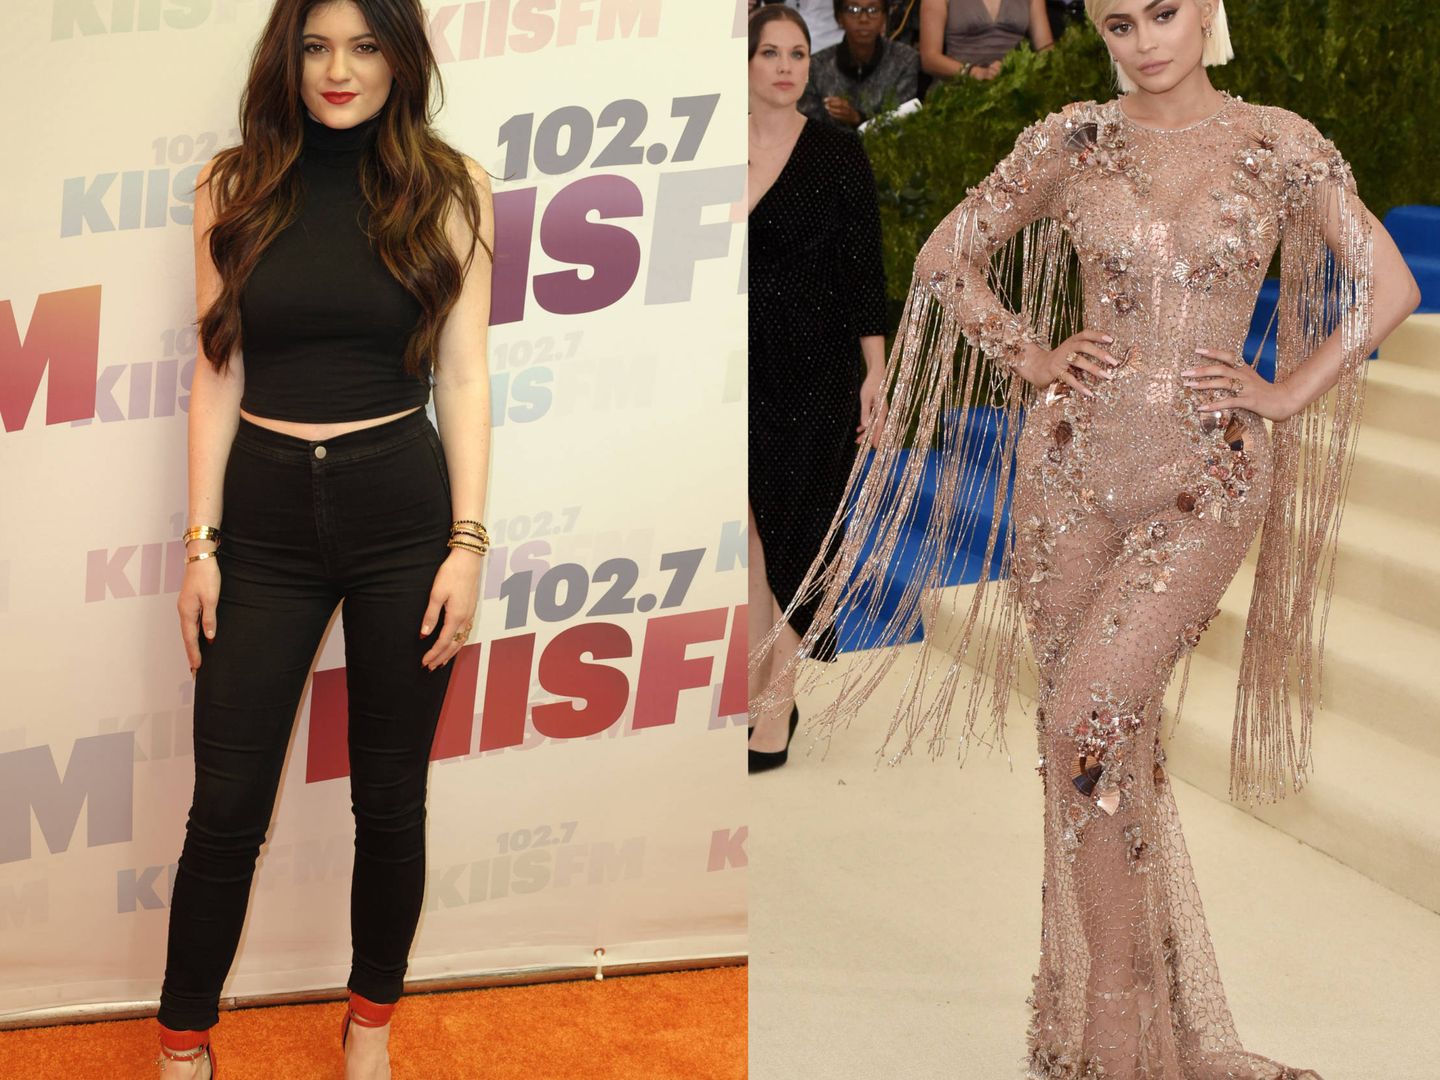 Kylie Jenner en 2013 vs. Kylie Jenner en 2017.